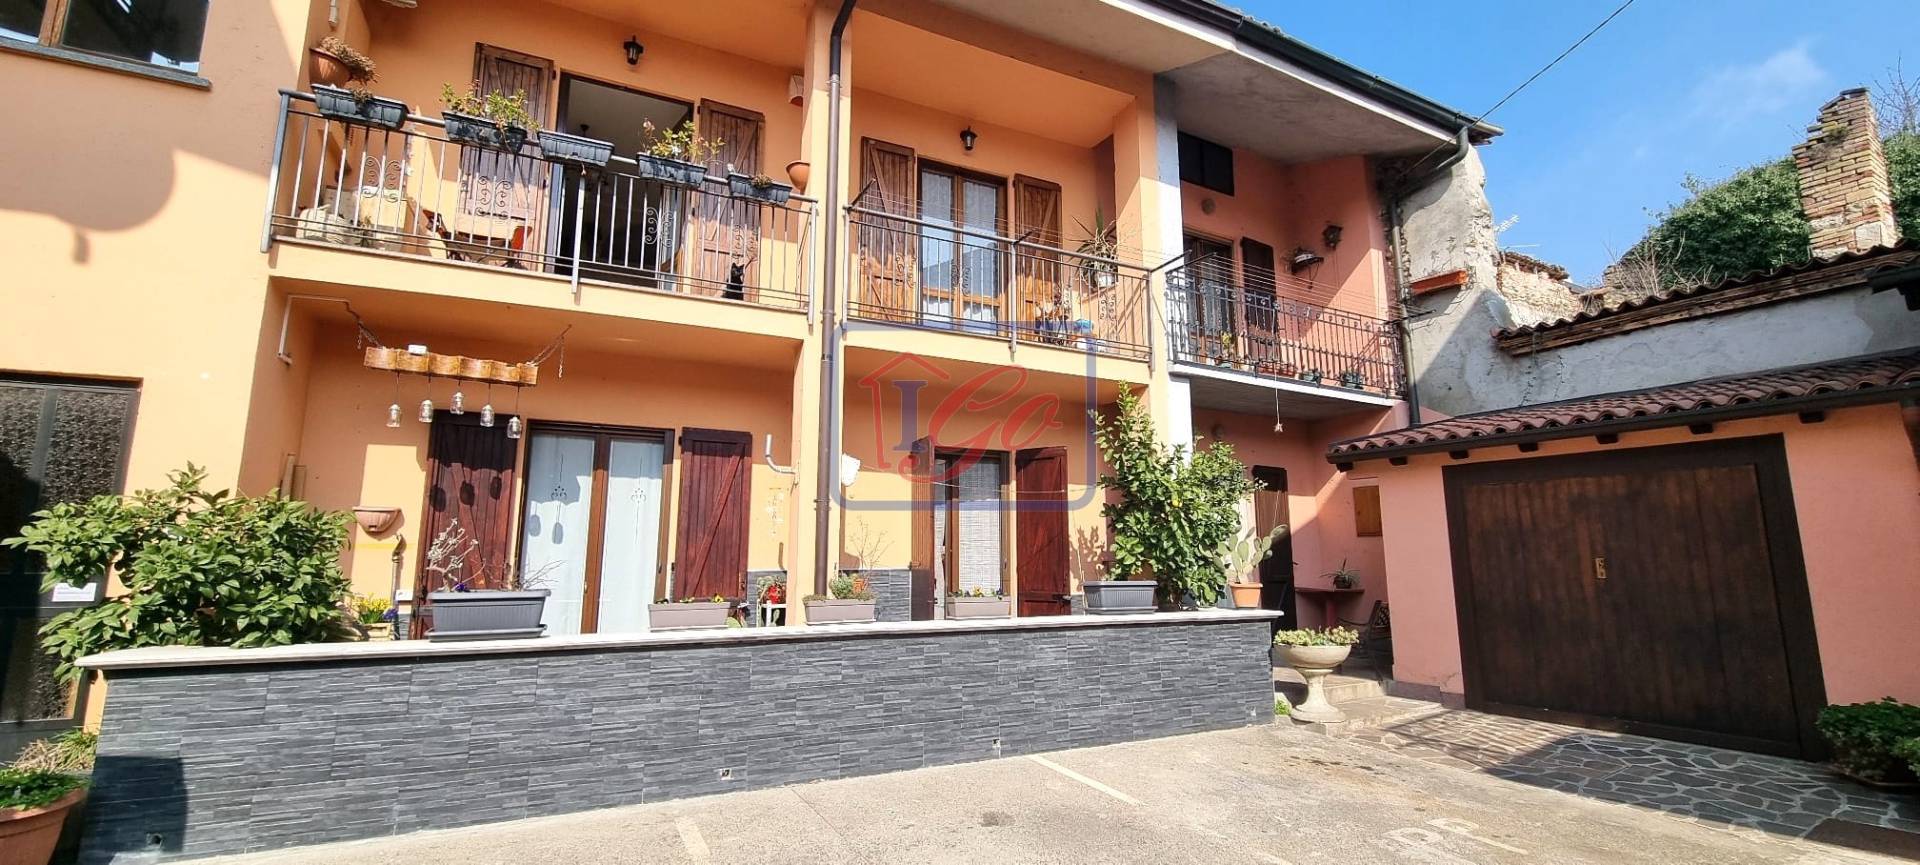 Appartamento in vendita a Capriate San Gervasio, 3 locali, prezzo € 147.000 | PortaleAgenzieImmobiliari.it